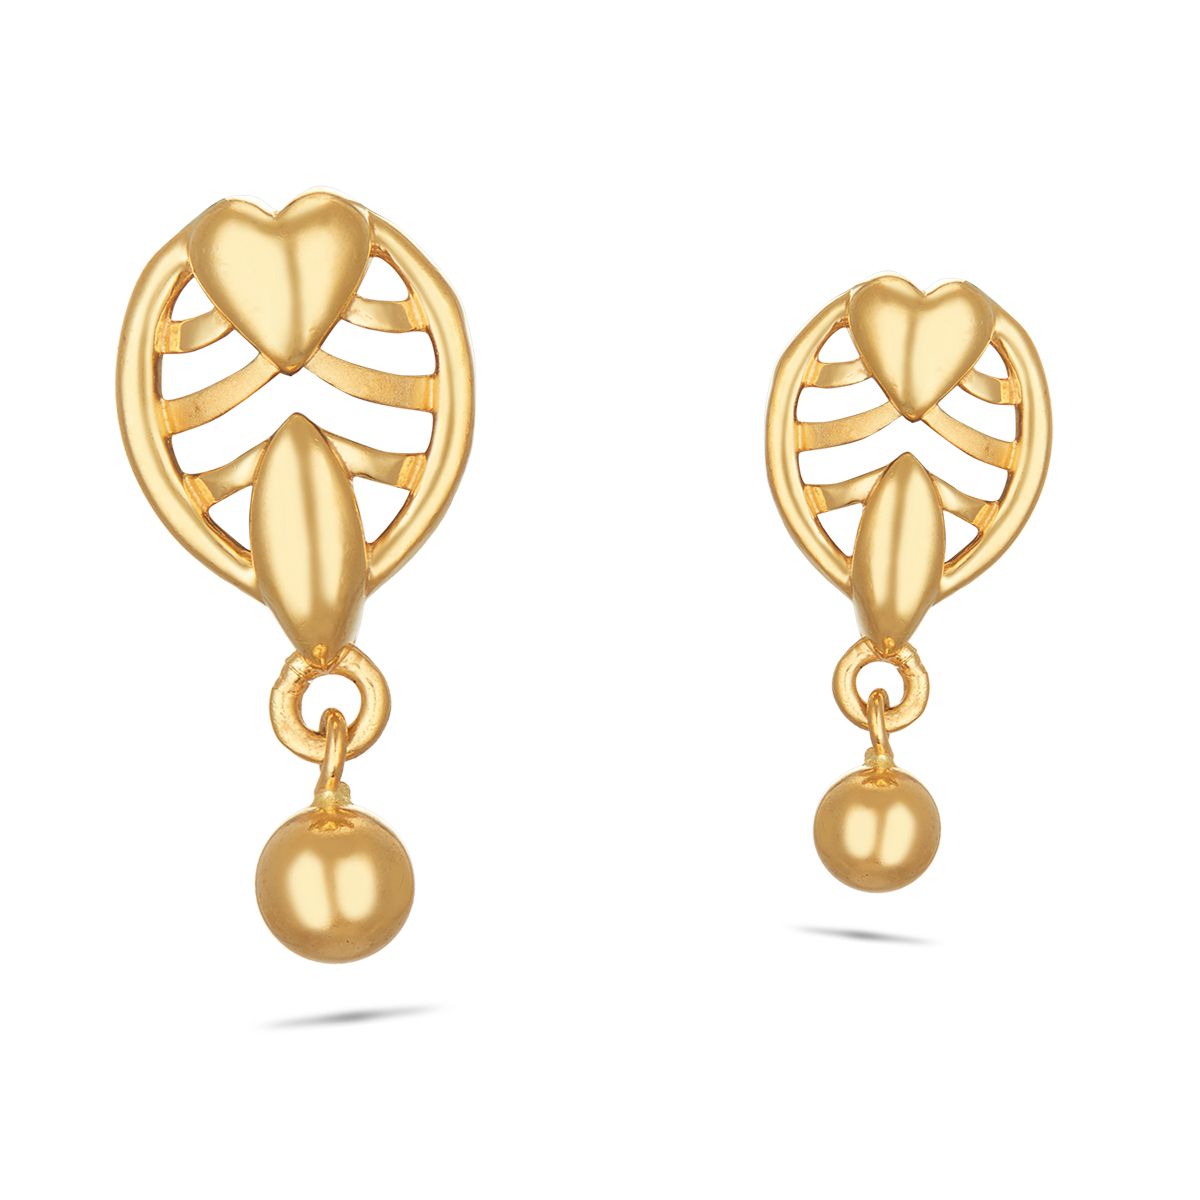 Minimalist Ball Stud Earrings | Dainty Everyday Earrings | IB Jewelry